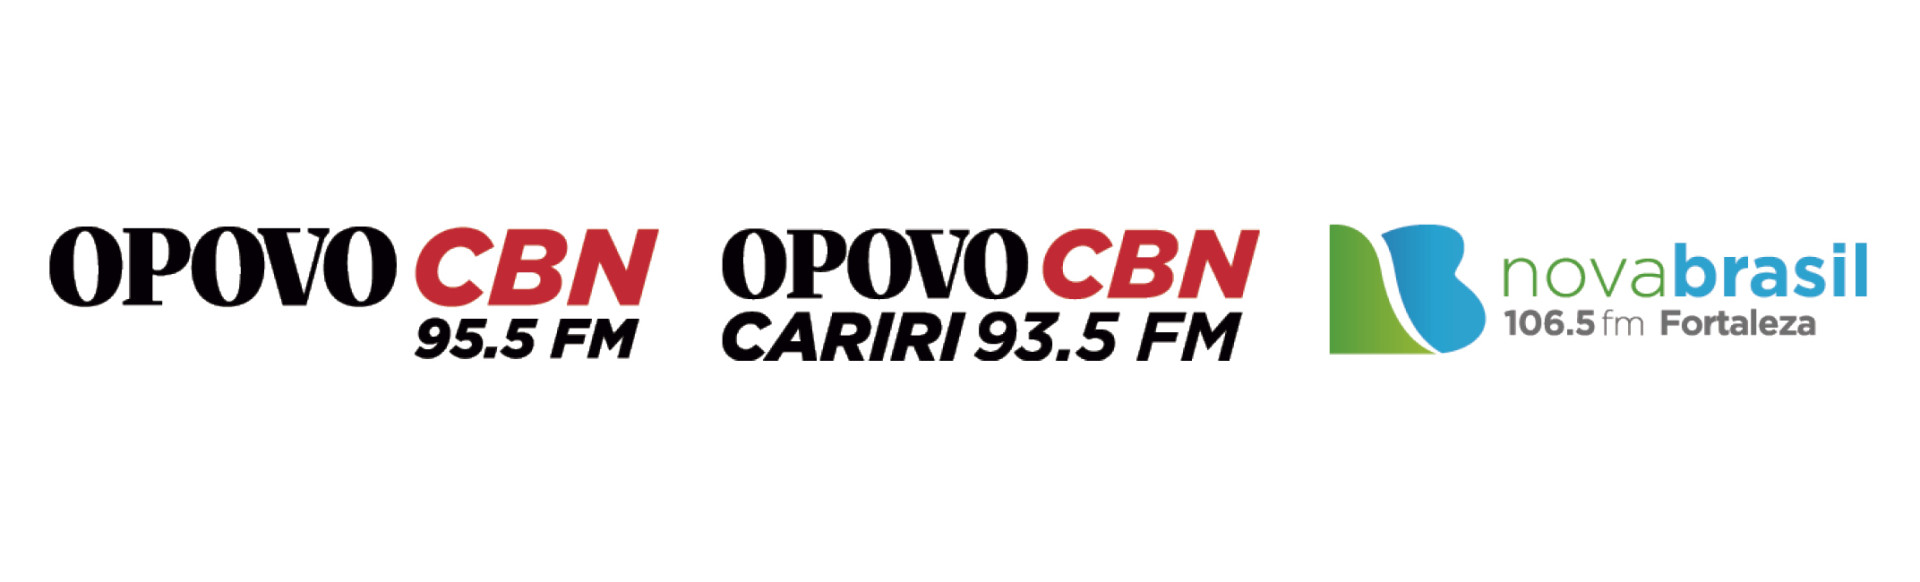 Logos das Rádios do grupo de comunicação O POVO. Radio O POVO CBN, O POVO CBN CARIRI e Rádio Nova Brasil.(Foto: Fotomontagem / Divulgação)